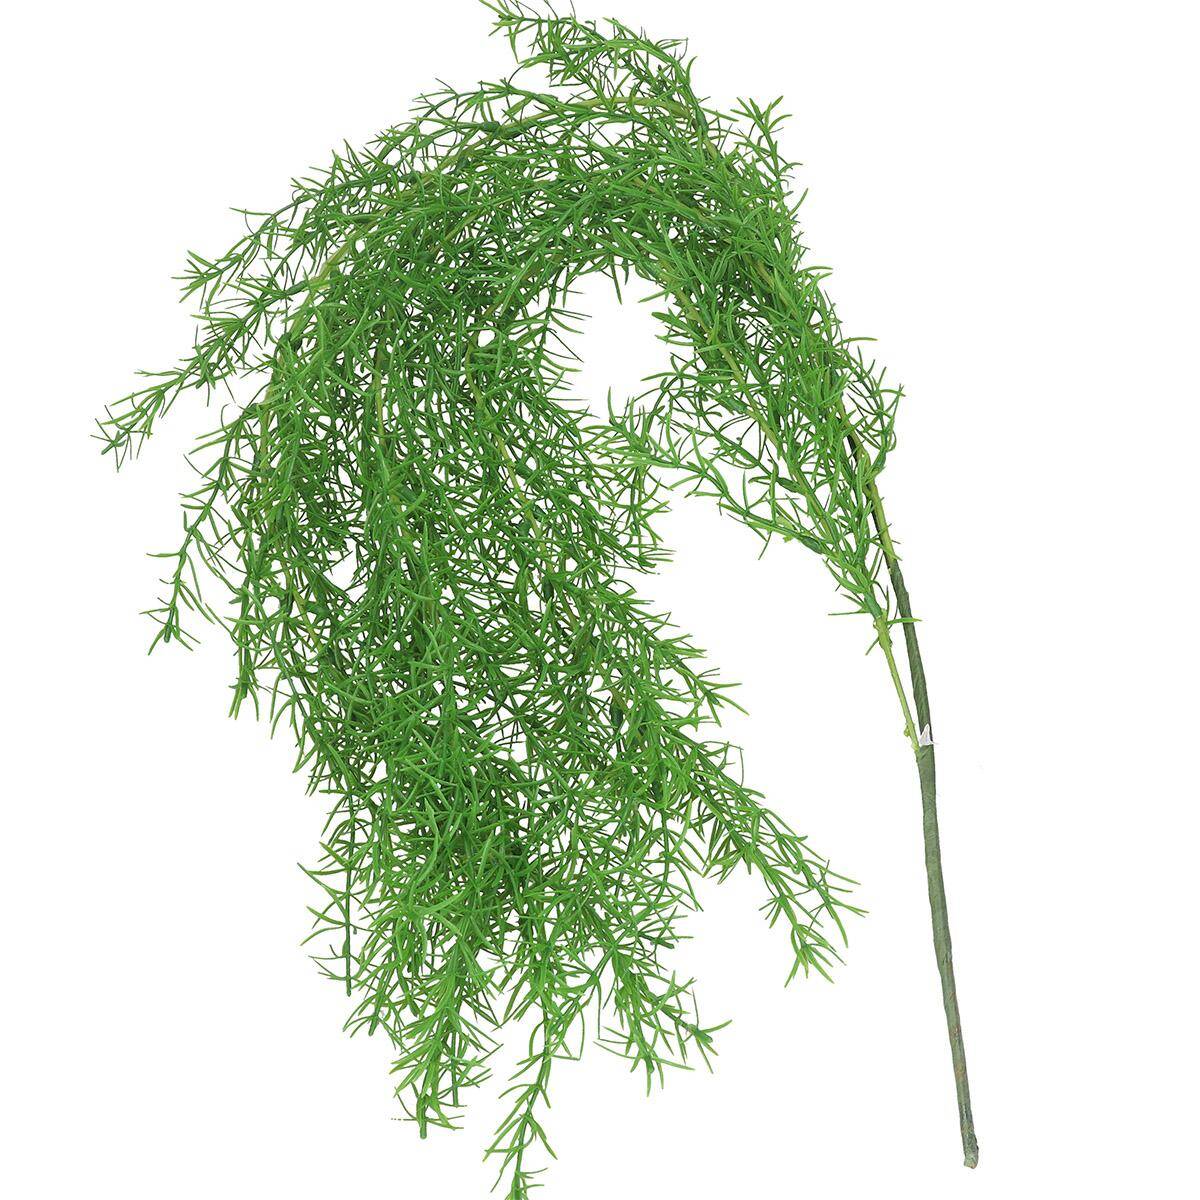 GAŁĄZKA PNĄCZE 101cm 3gał.asparagus